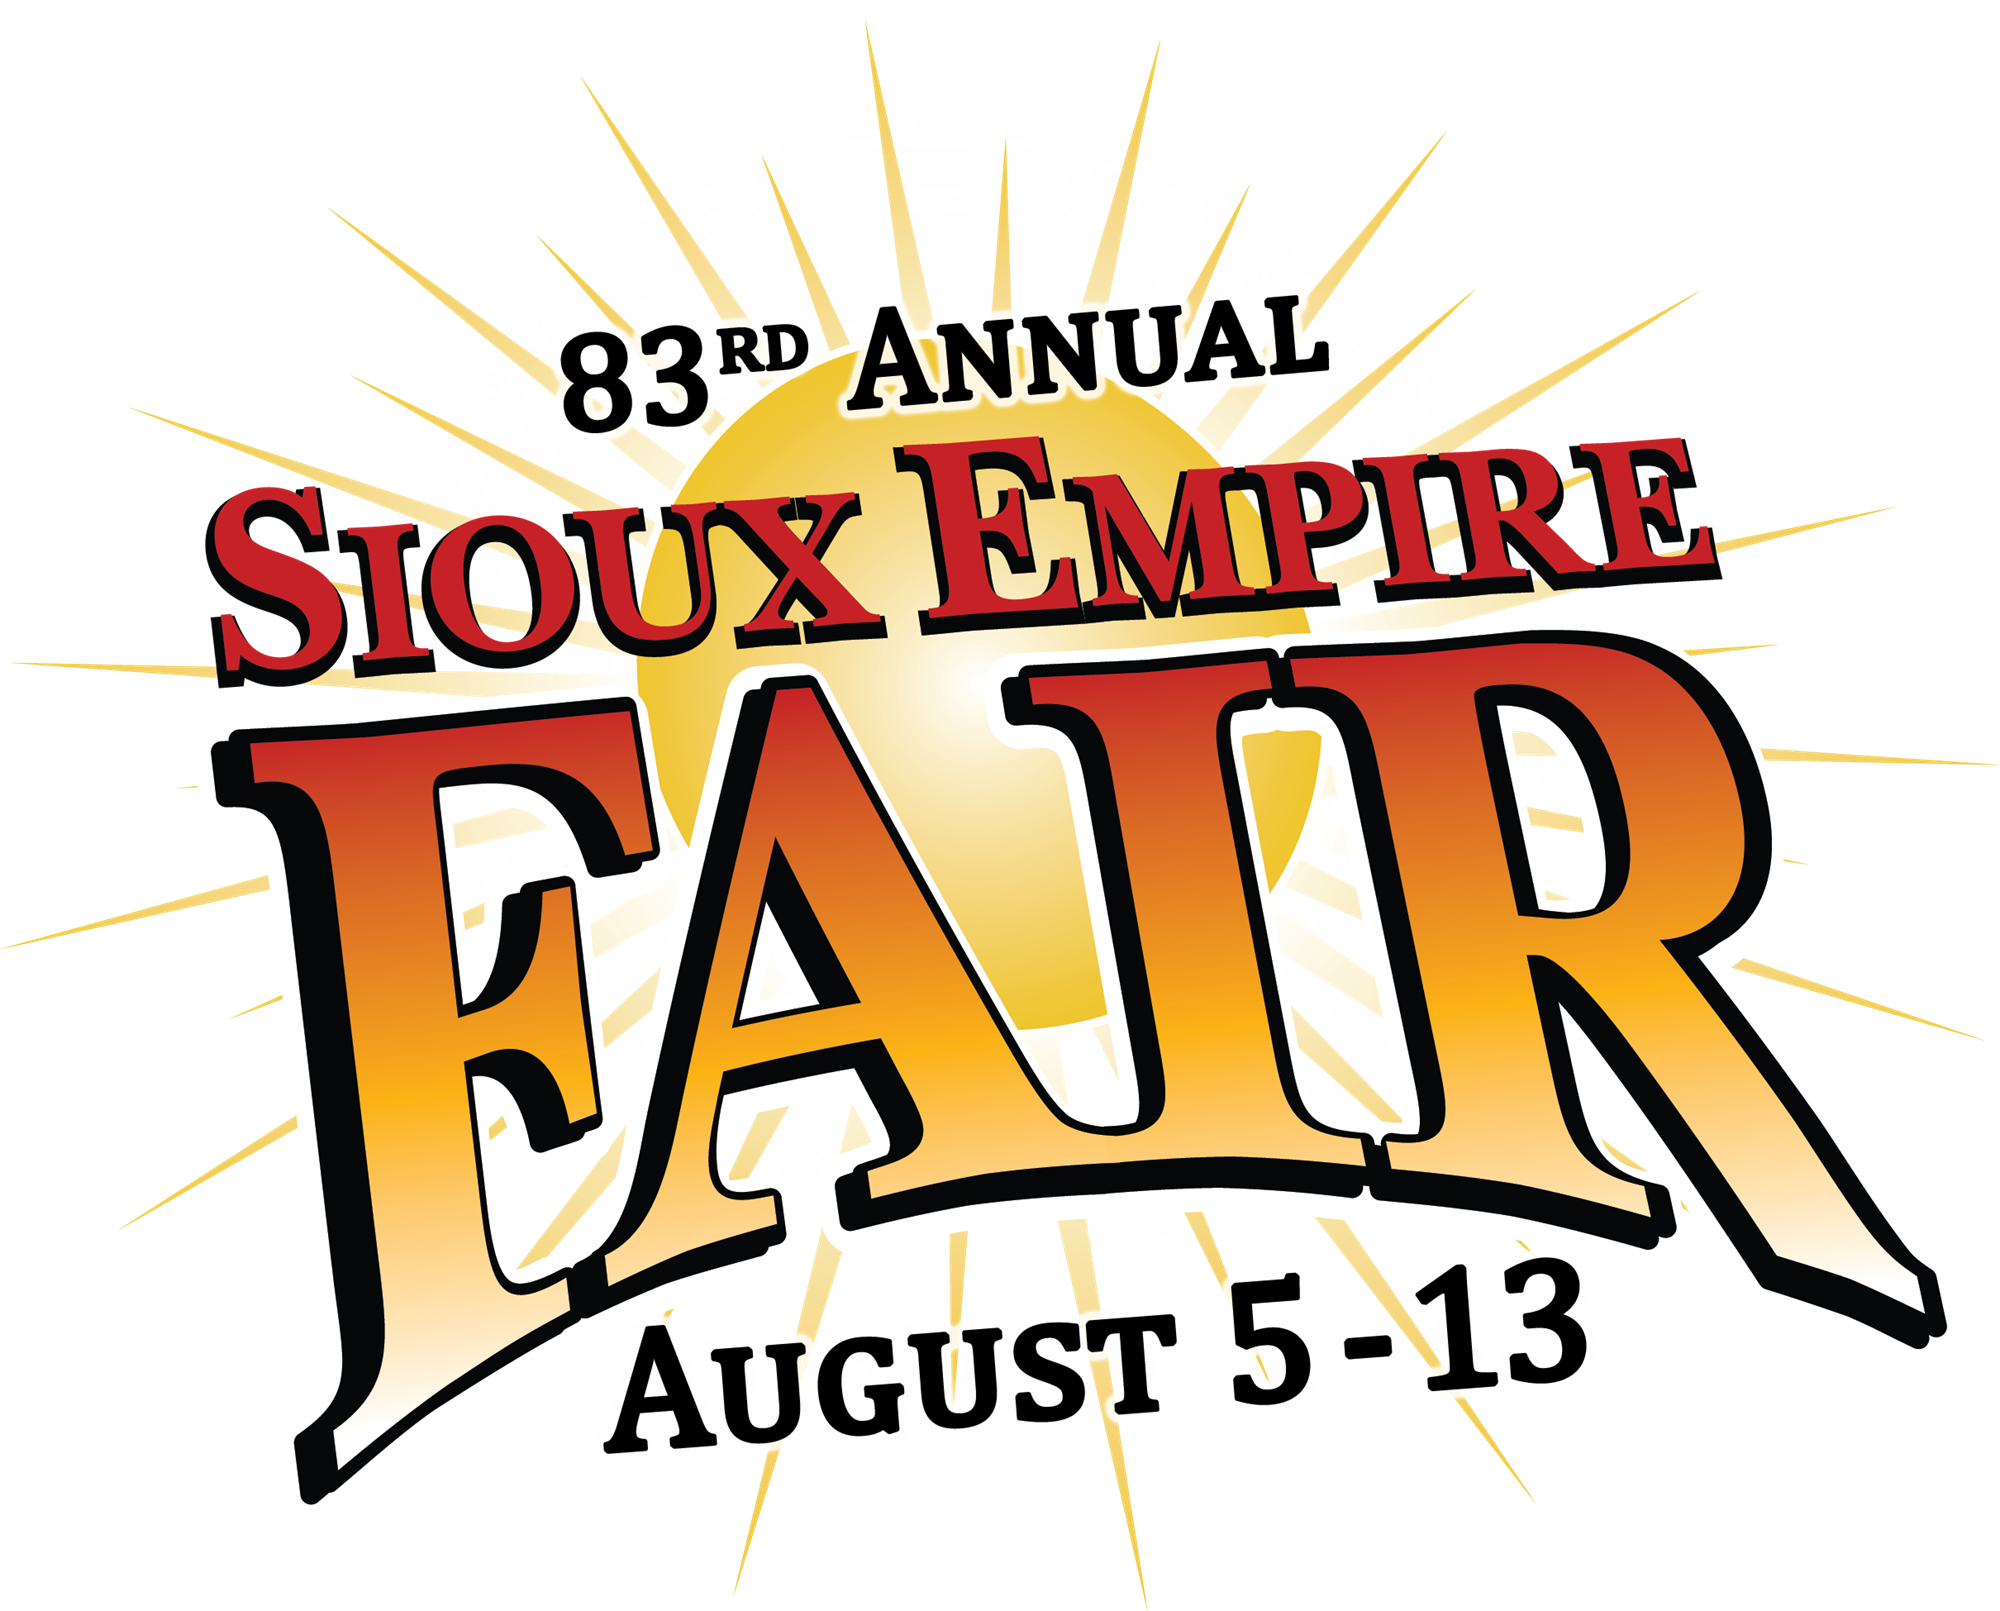 83rd Annual Sioux Empire Fair